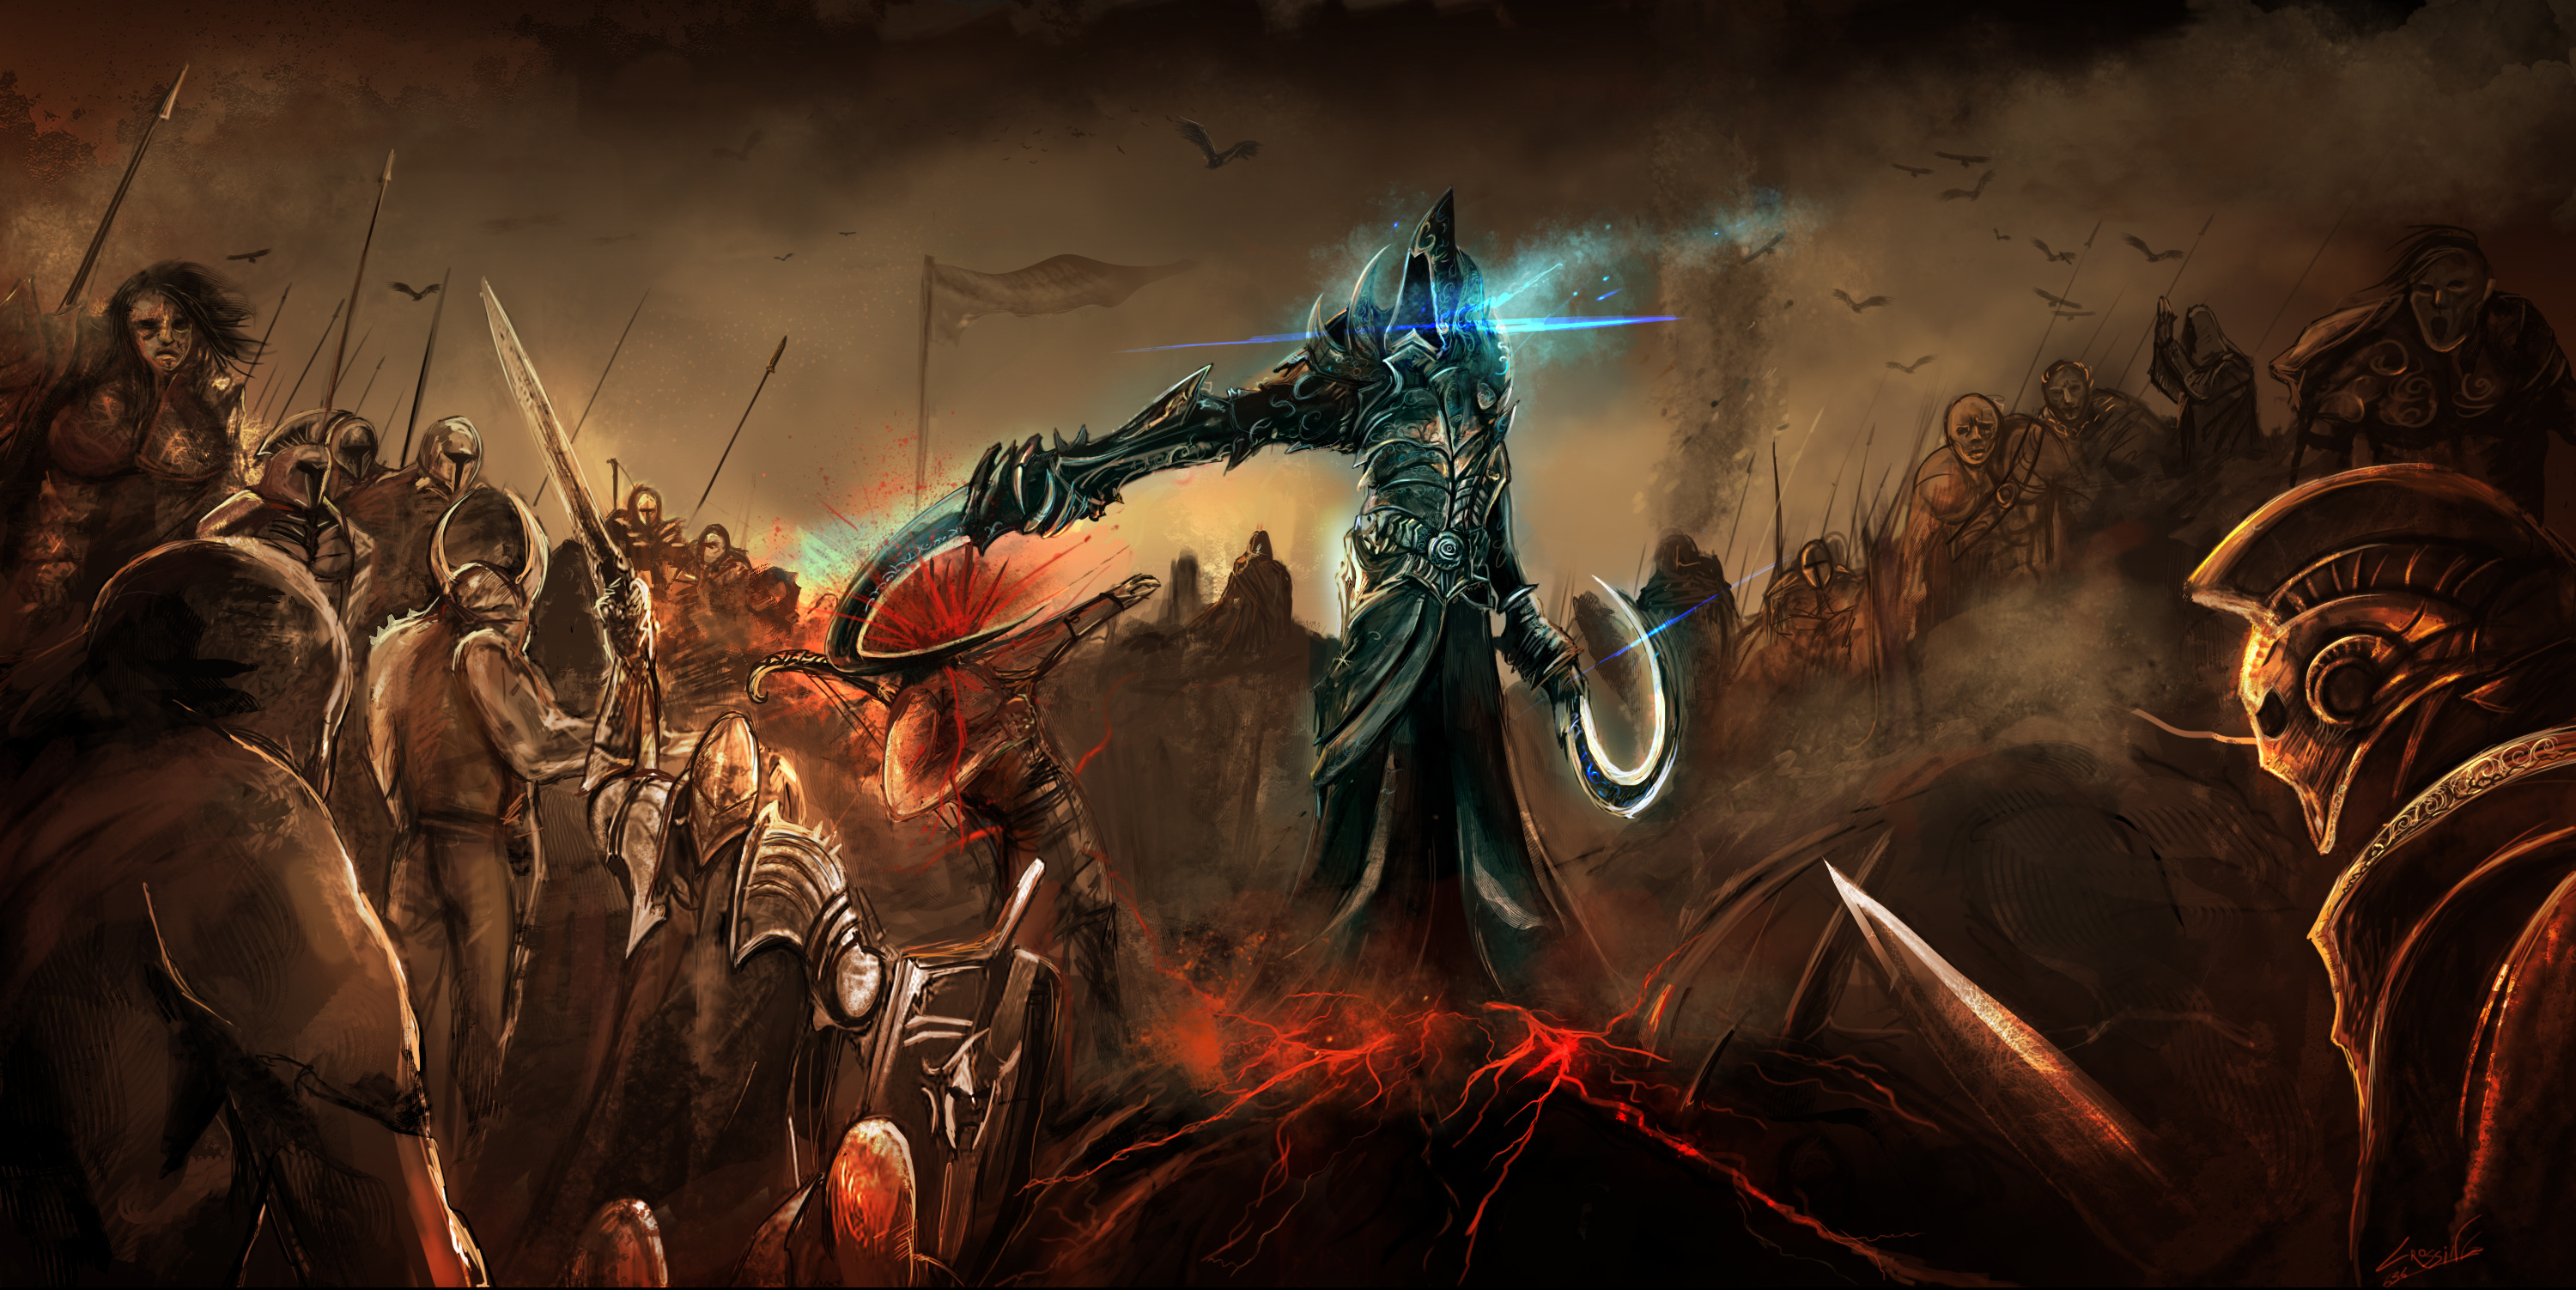 Download mobile wallpaper Diablo Iii: Reaper Of Souls, Malthael (Diablo Iii), Diablo, Video Game for free.